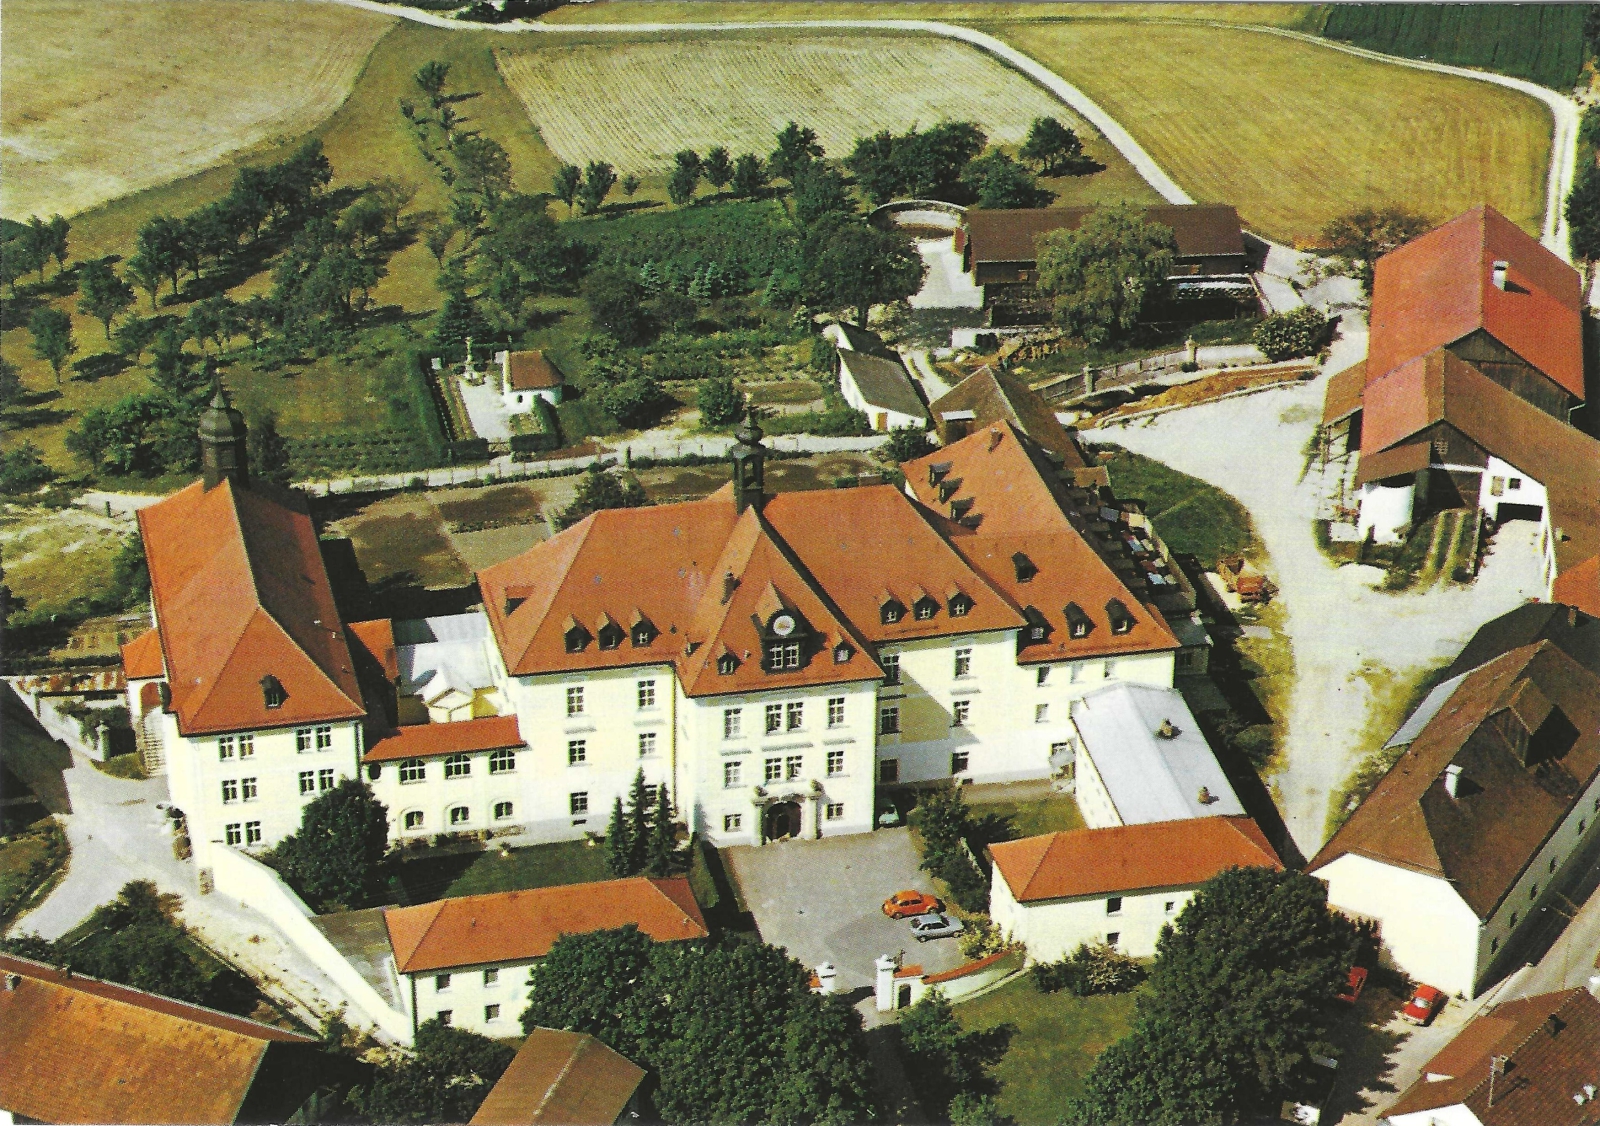 Bild 6: Luftbild Kloster Thyrnau in den frühen 1970er Jahren Ehem. Jagdschloss (Mitte) mit Anbauten Zellentrakt 1910 (rechts) und Klosterkirche 1913-14 (links), rechts im Bild die landwirtschaftlichen Betriebsgebäude